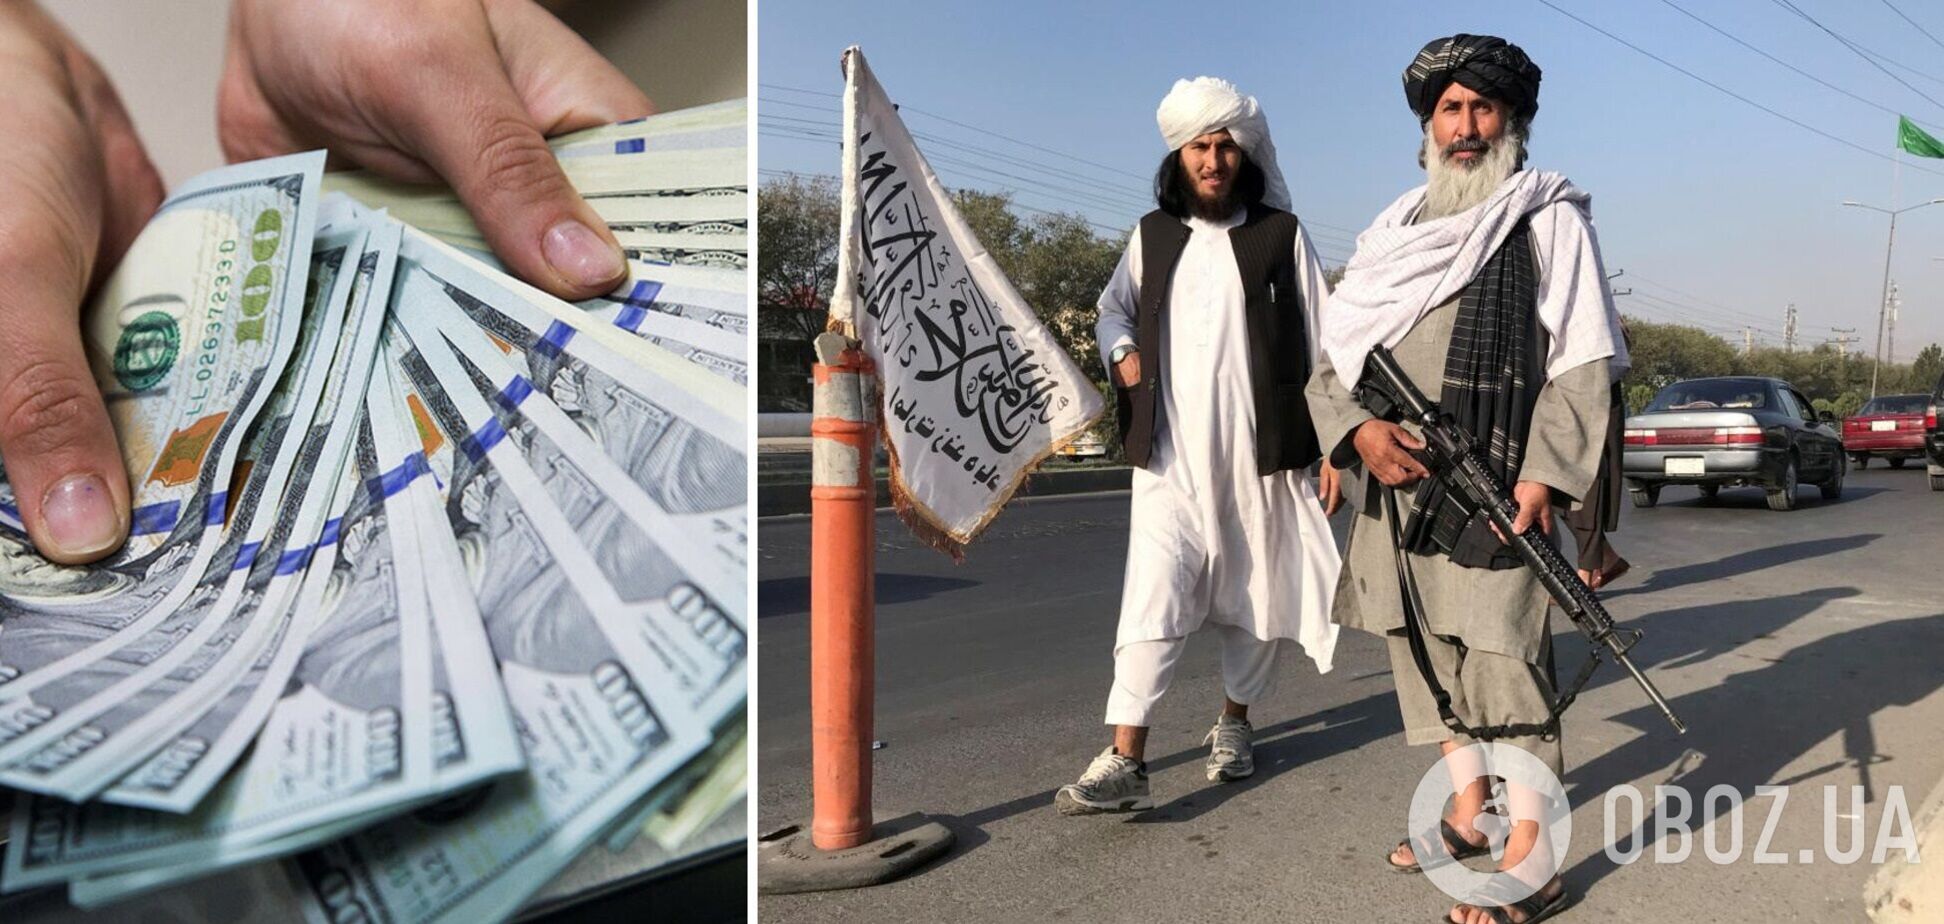 Талібан заборонив використання іноземної валюти в Афганістані